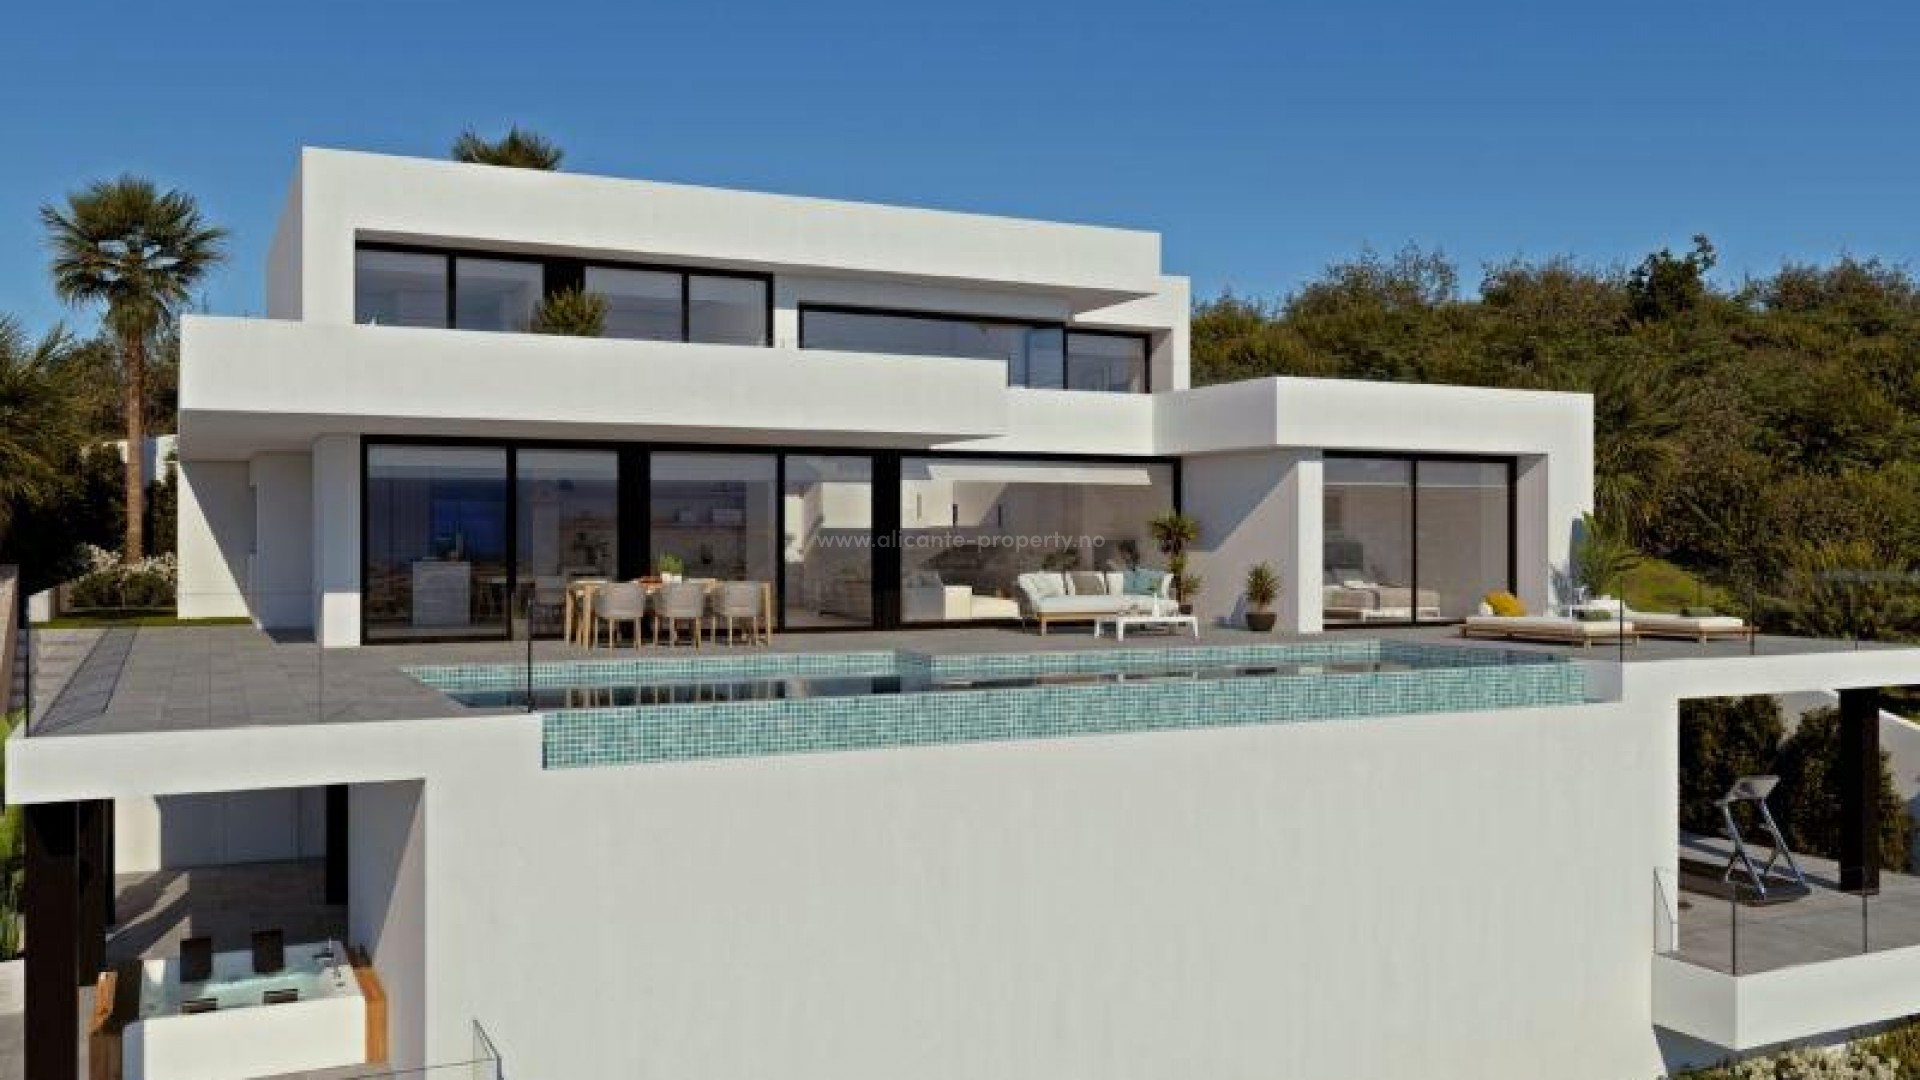 Moderne luksusvilla i Benitachell (Cumbres del Sol) med 4 soverom, 5 bad, hovedrommene er koblet til utsiden, med bassengterrassen og veranda